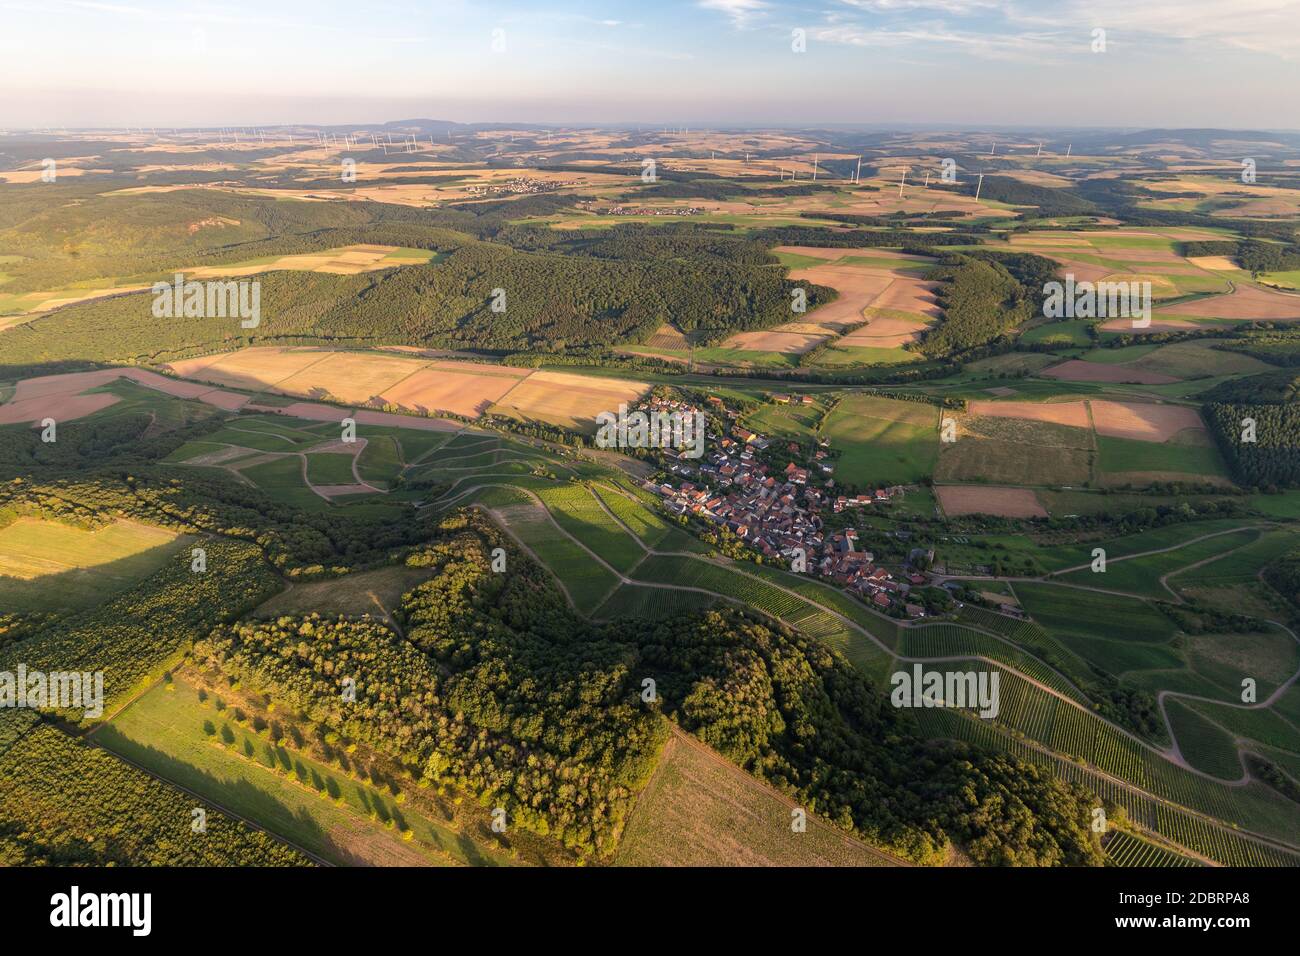 Vue aérienne dans un paysage en Allemagne, Rhénanie Palatinat près de Bad Sobernheim avec prairie, terres agricoles, forêt, collines, montagnes Banque D'Images